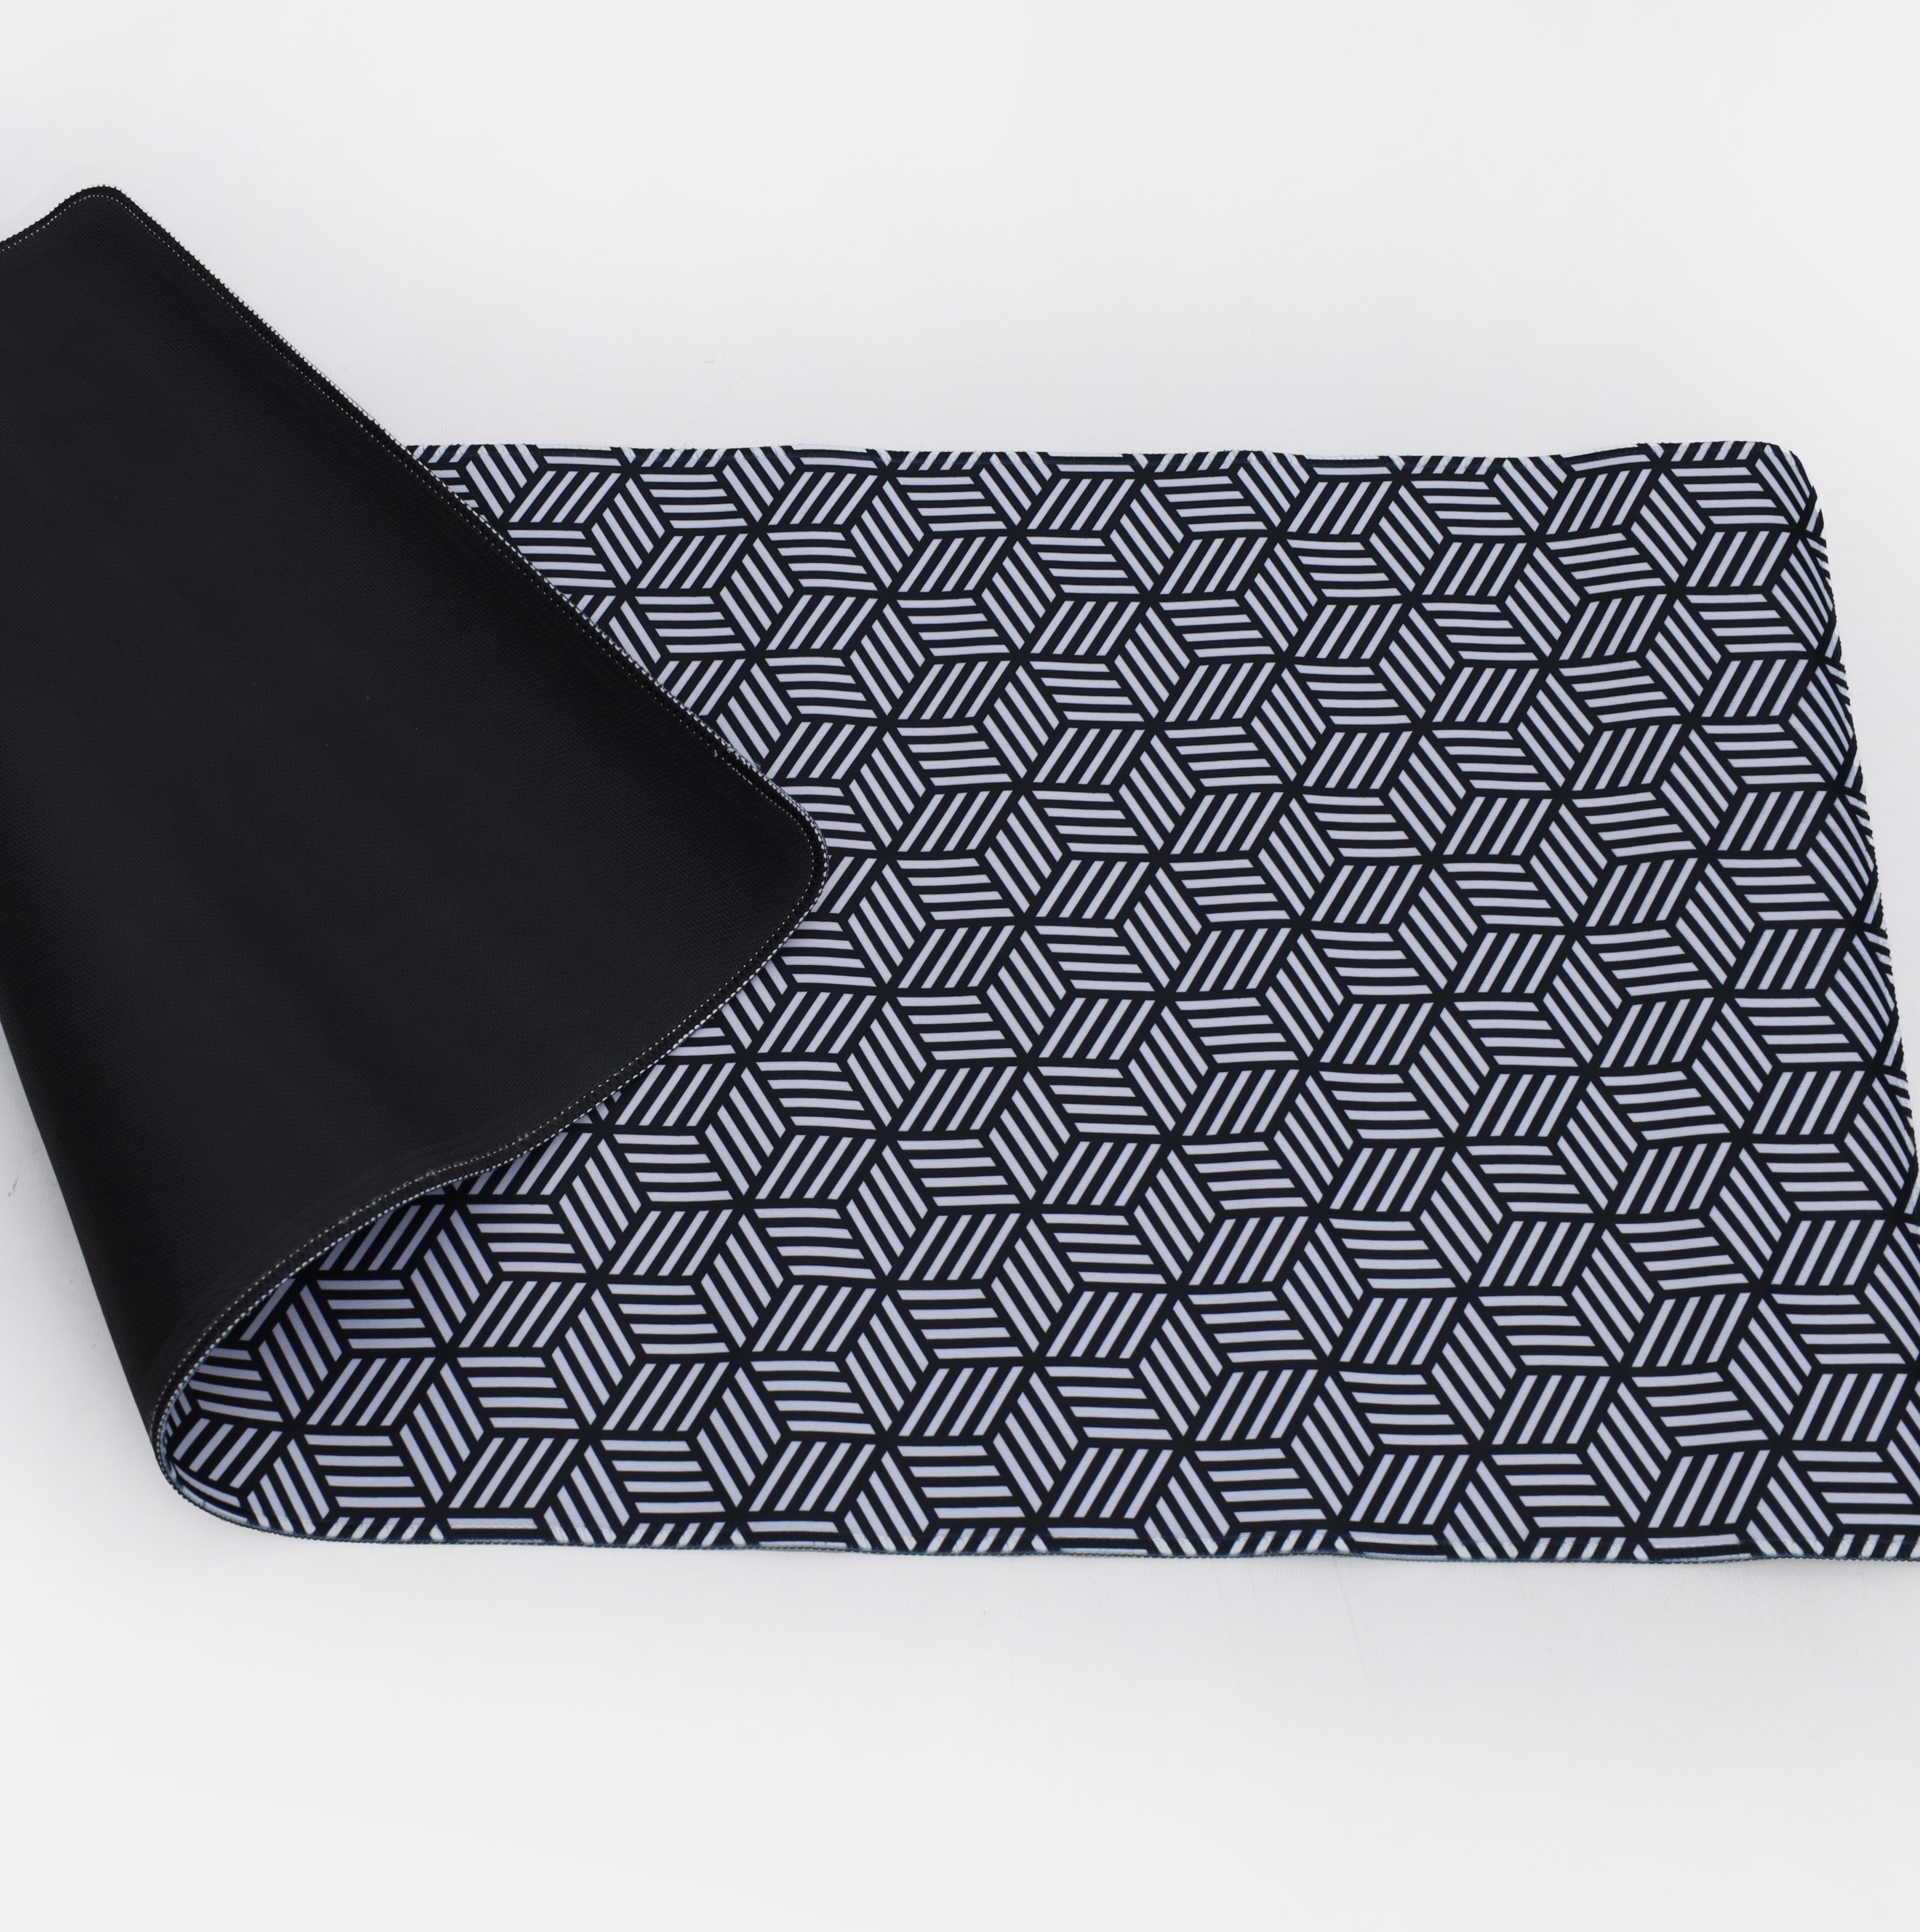 Printed Desk Mat - Hexagon Pattern